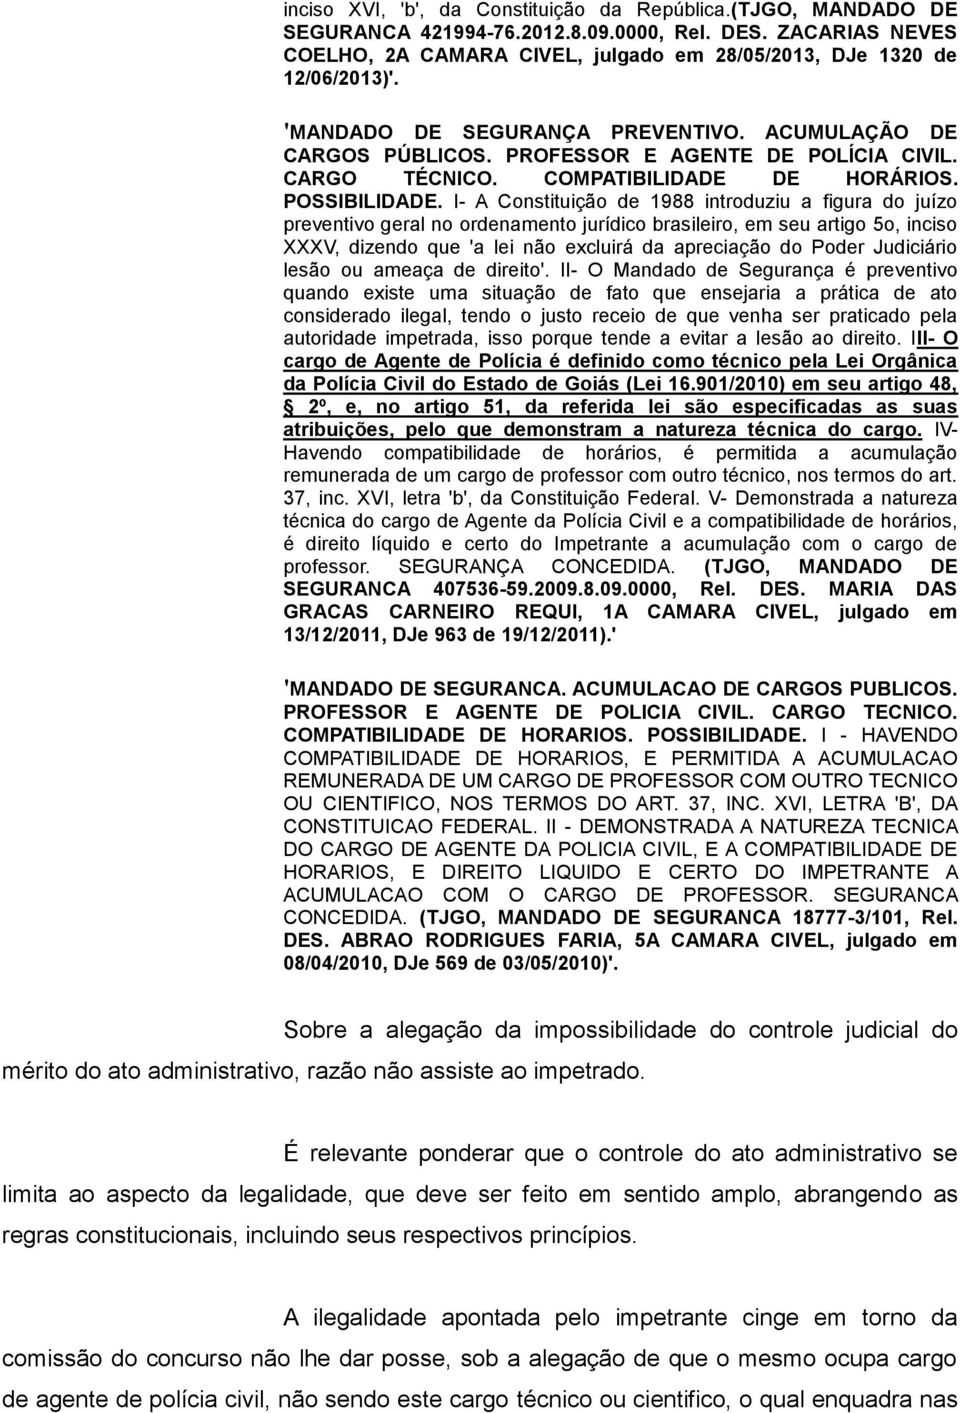 I- A Constituição de 1988 introduziu a figura do juízo preventivo geral no ordenamento jurídico brasileiro, em seu artigo 5o, inciso XXXV, dizendo que 'a lei não excluirá da apreciação do Poder